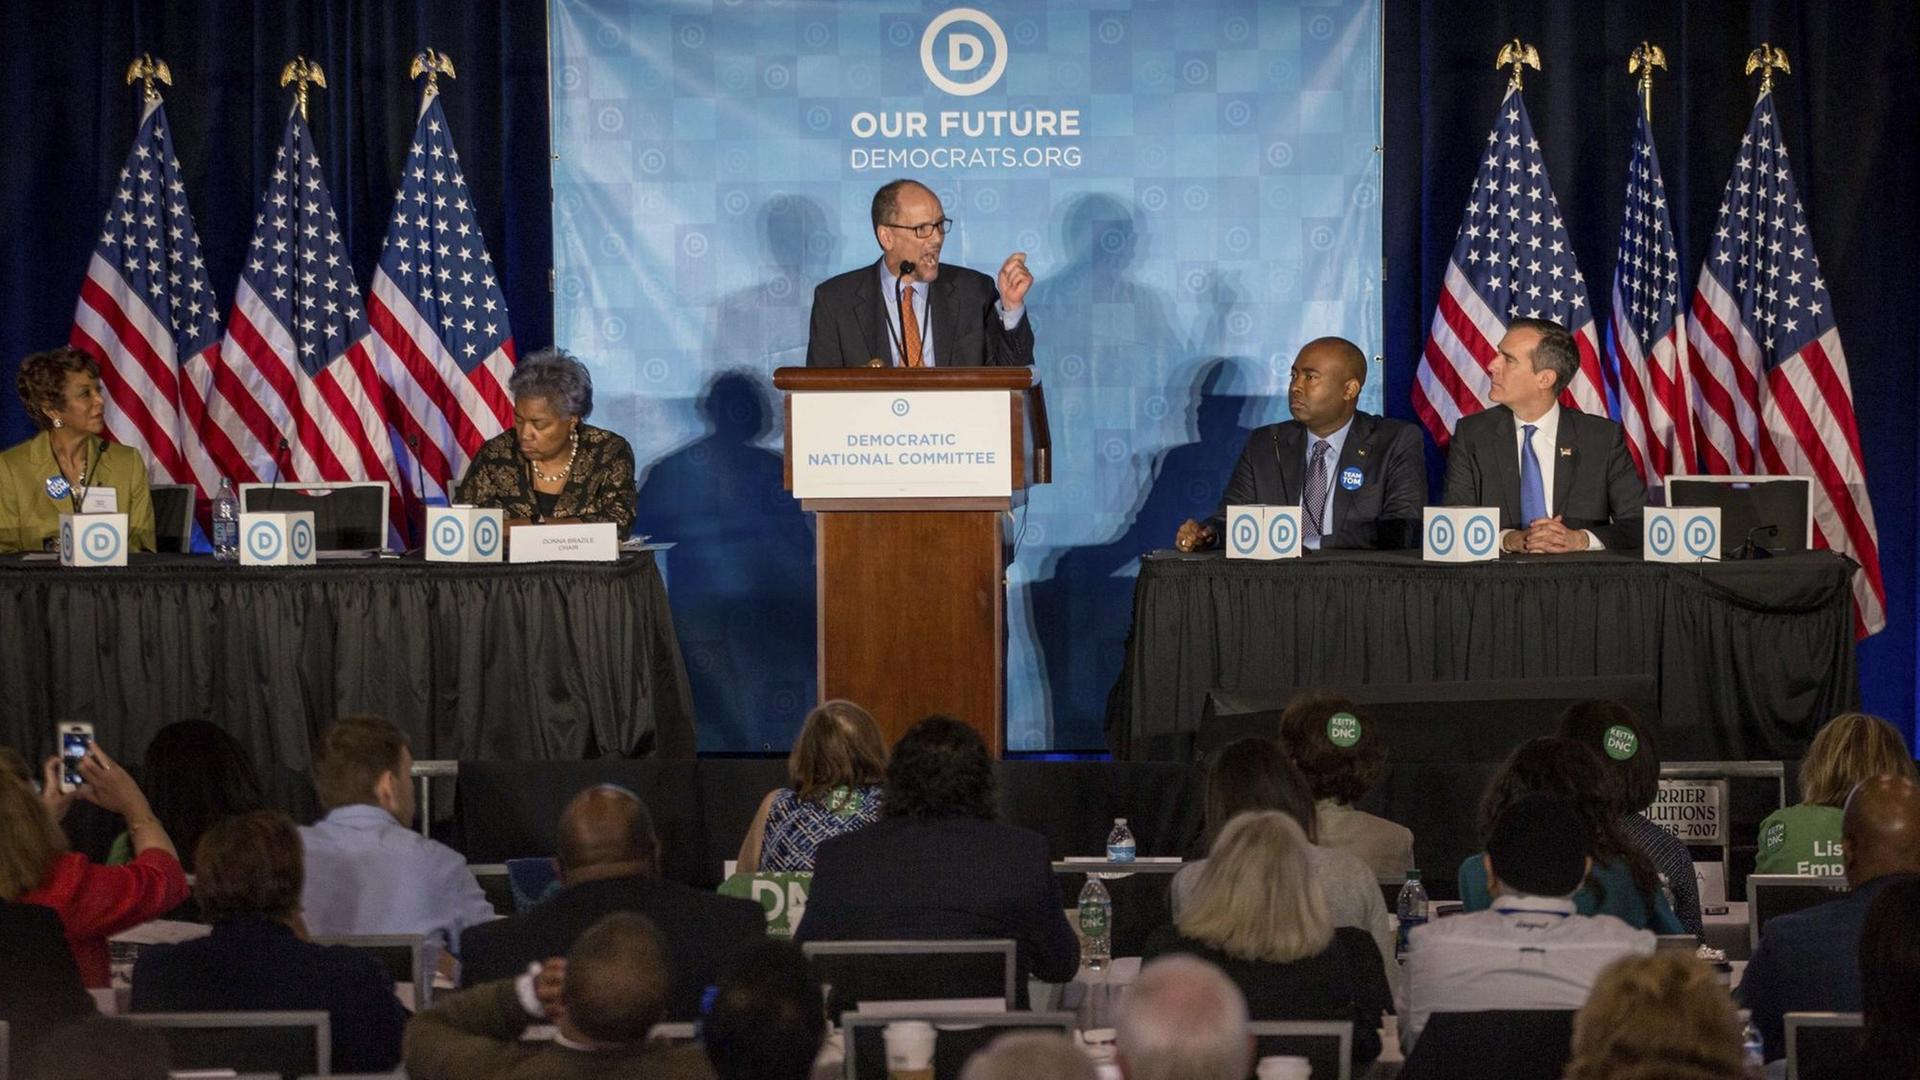 Das Bild zeigt den früheren US-Arbeitsminister Perez am Rednepult. Er hält vor seiner Wahl zum neuen Parteivorsitzenden der Demokaten eine Rede auf dem Treffen in Atlanta.